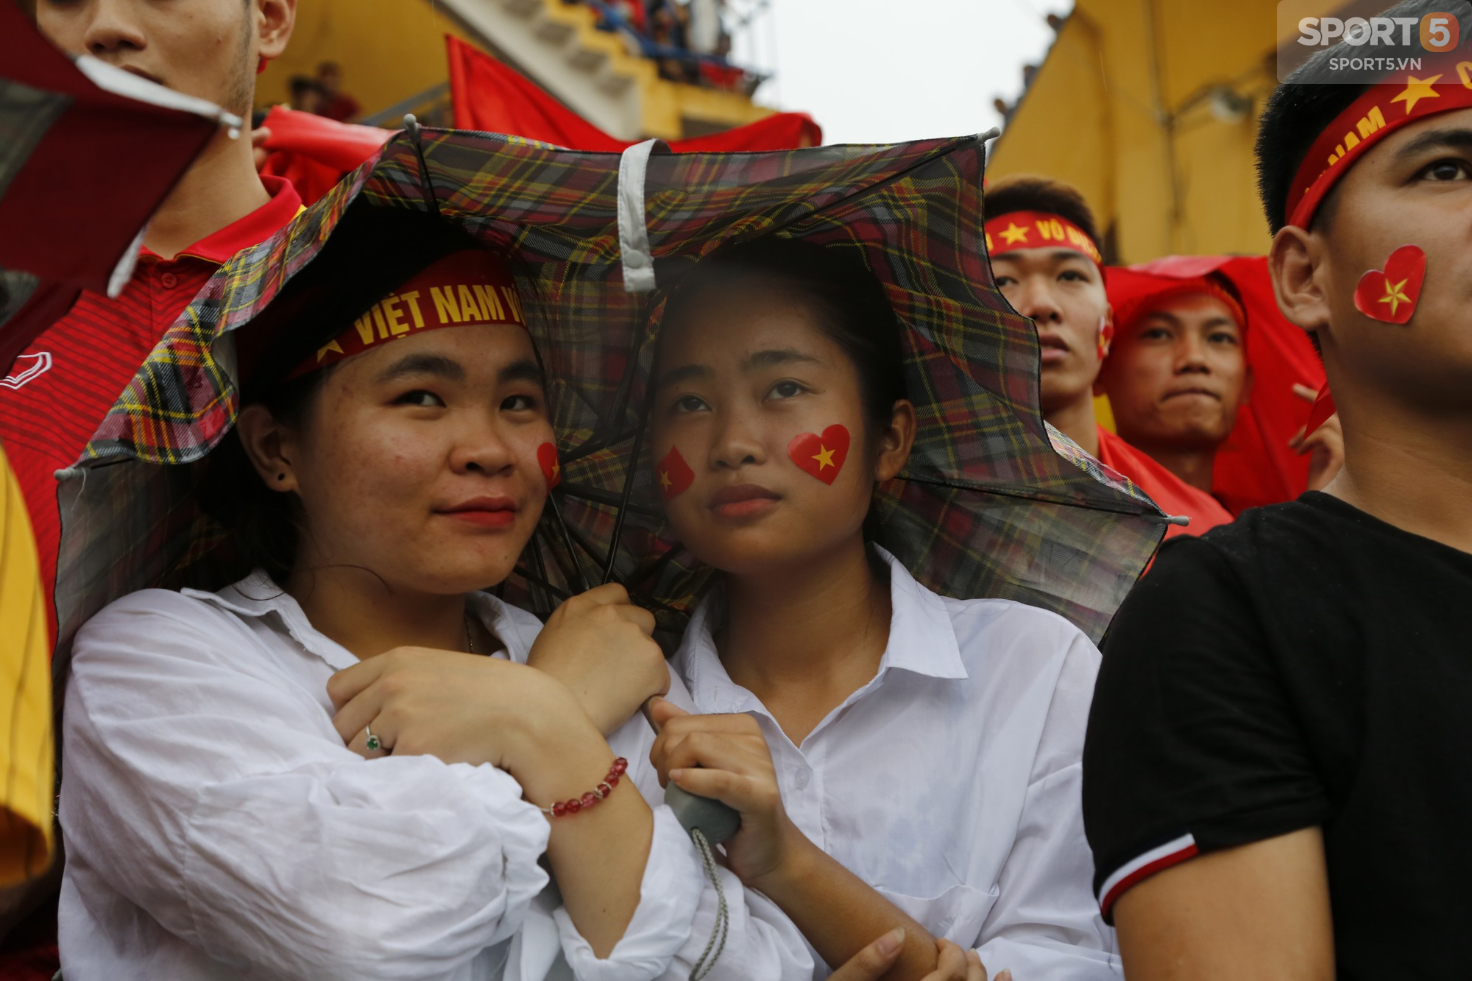 Ấm lòng hình ảnh người hâm mộ Việt Nam đội mưa tới giây cuối cùng dù đội nhà thất bại - Ảnh 3.